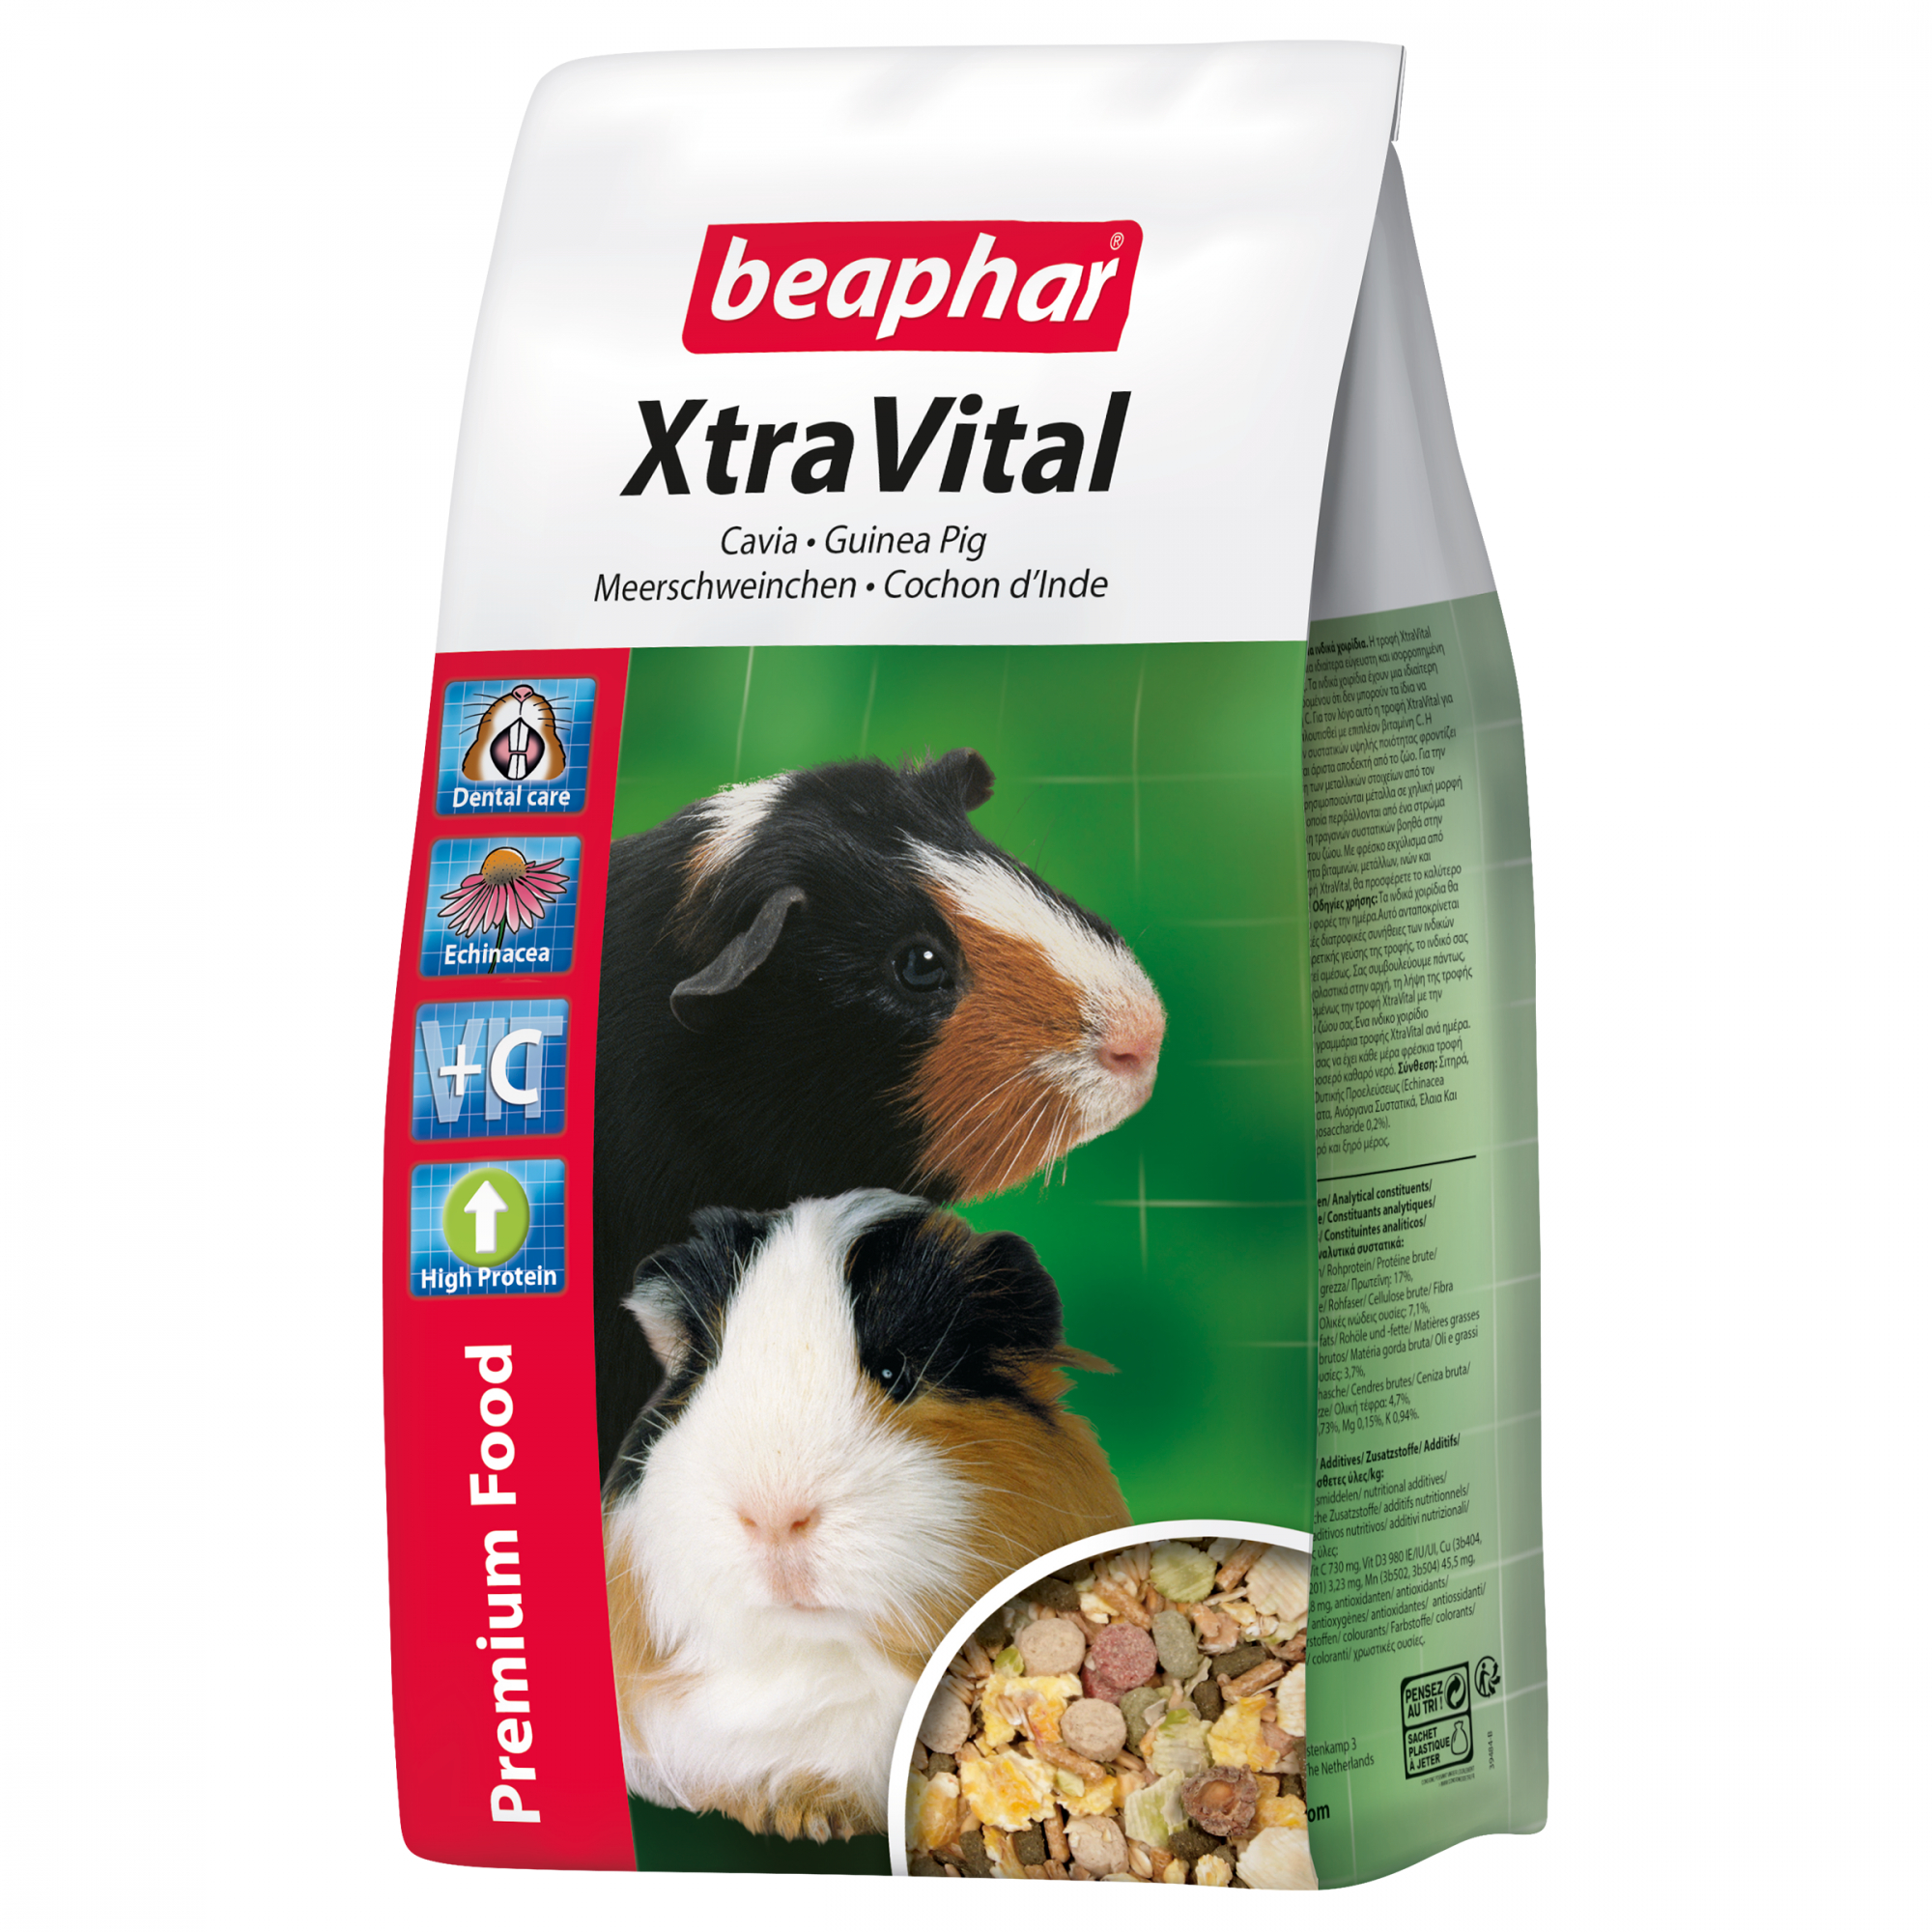 XtraVital, alimentation premium cochon d'Inde